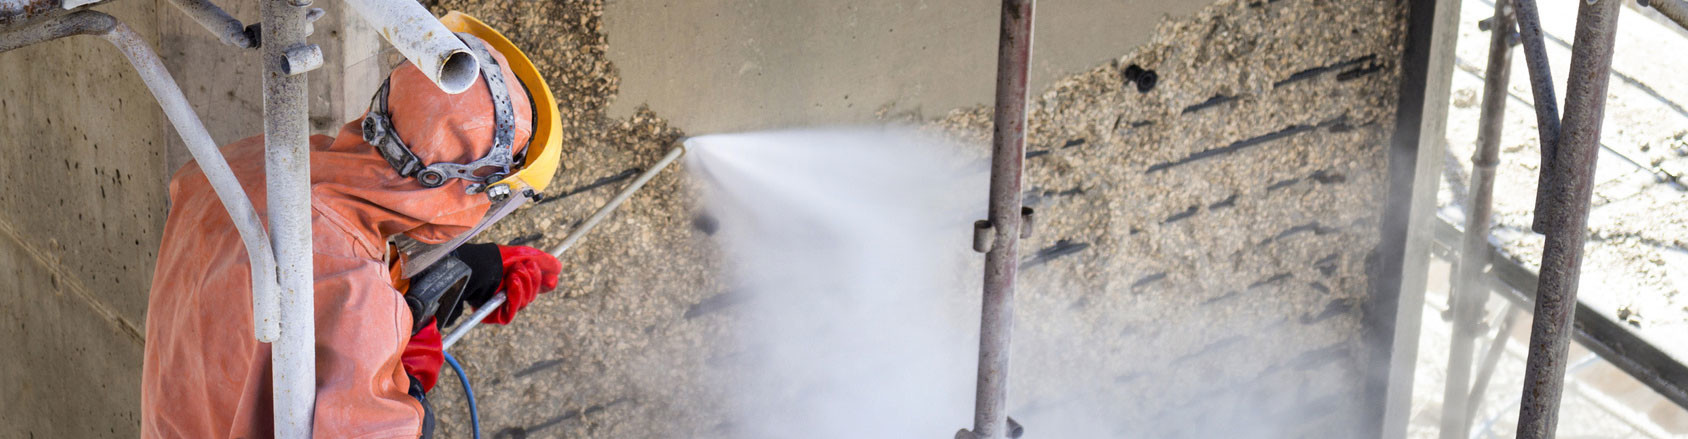 Industriereinigung Hochdruckreinigung Hochdruckwasserstrahlen Industrie Wand